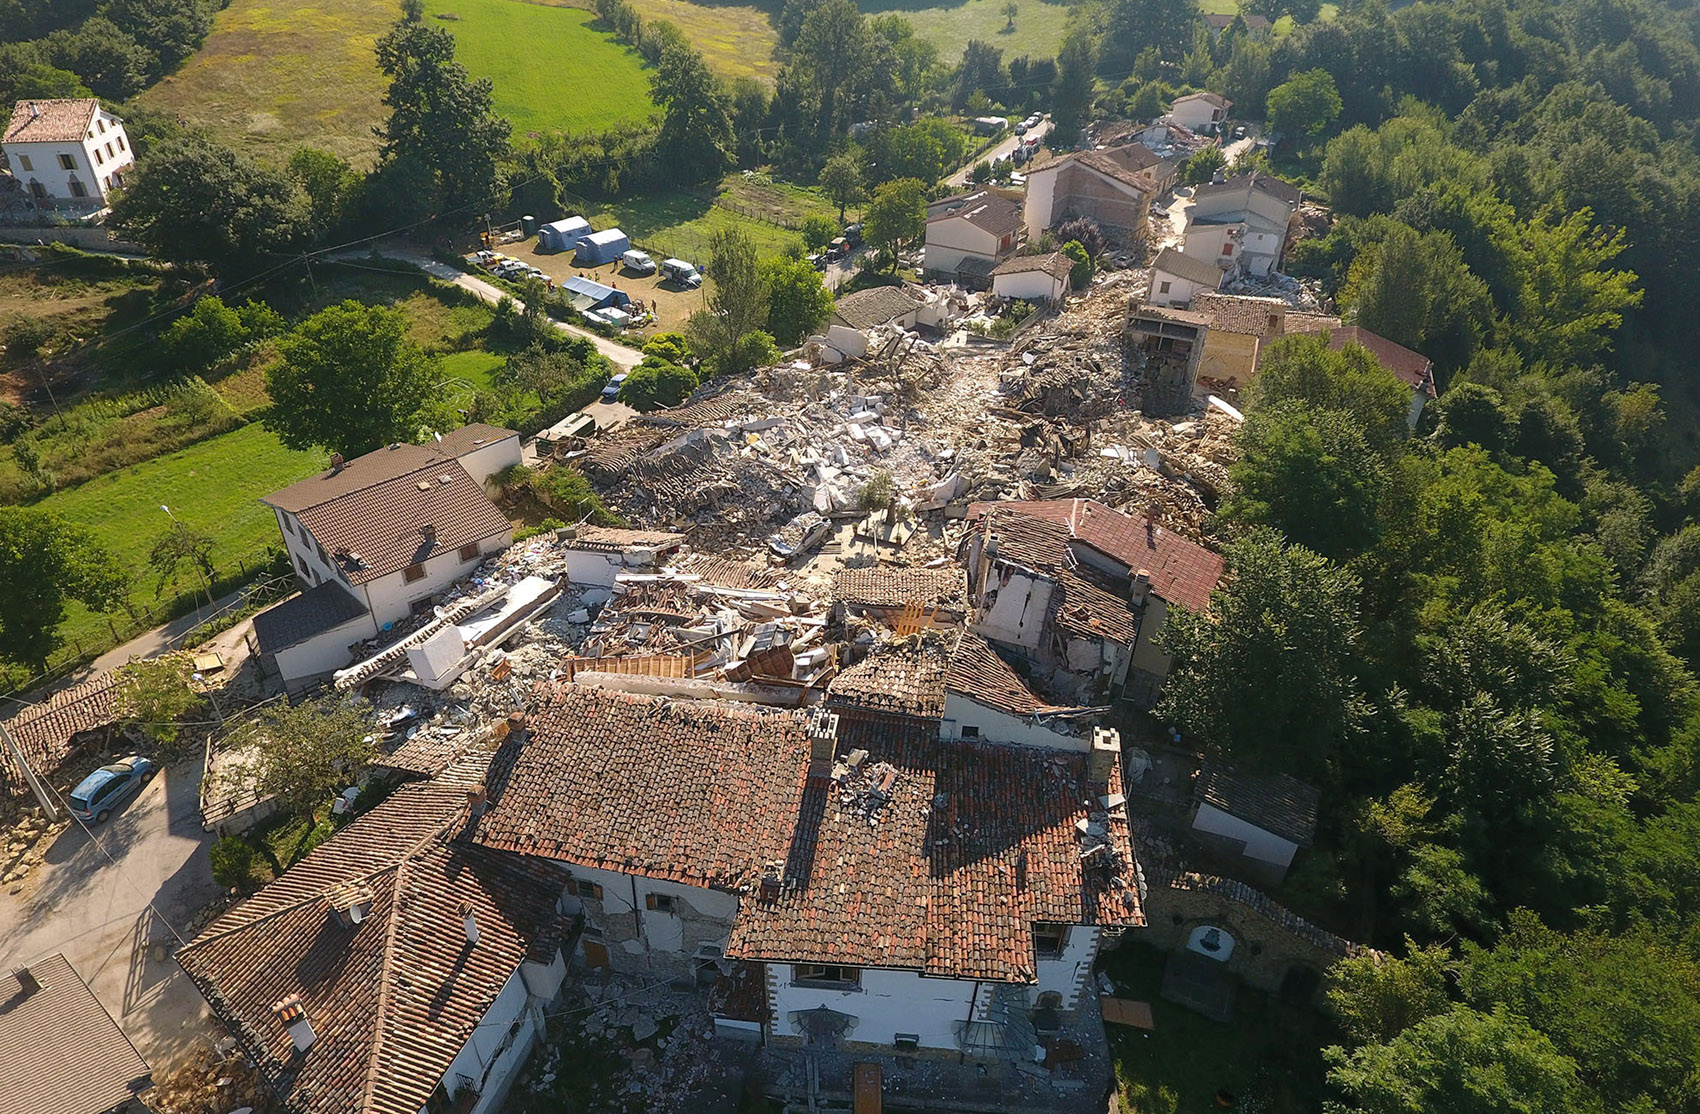 26/08 - Imagem capturada por um drone mostra a destruição causada pelo terremoto em Saletta, na região central da Itália